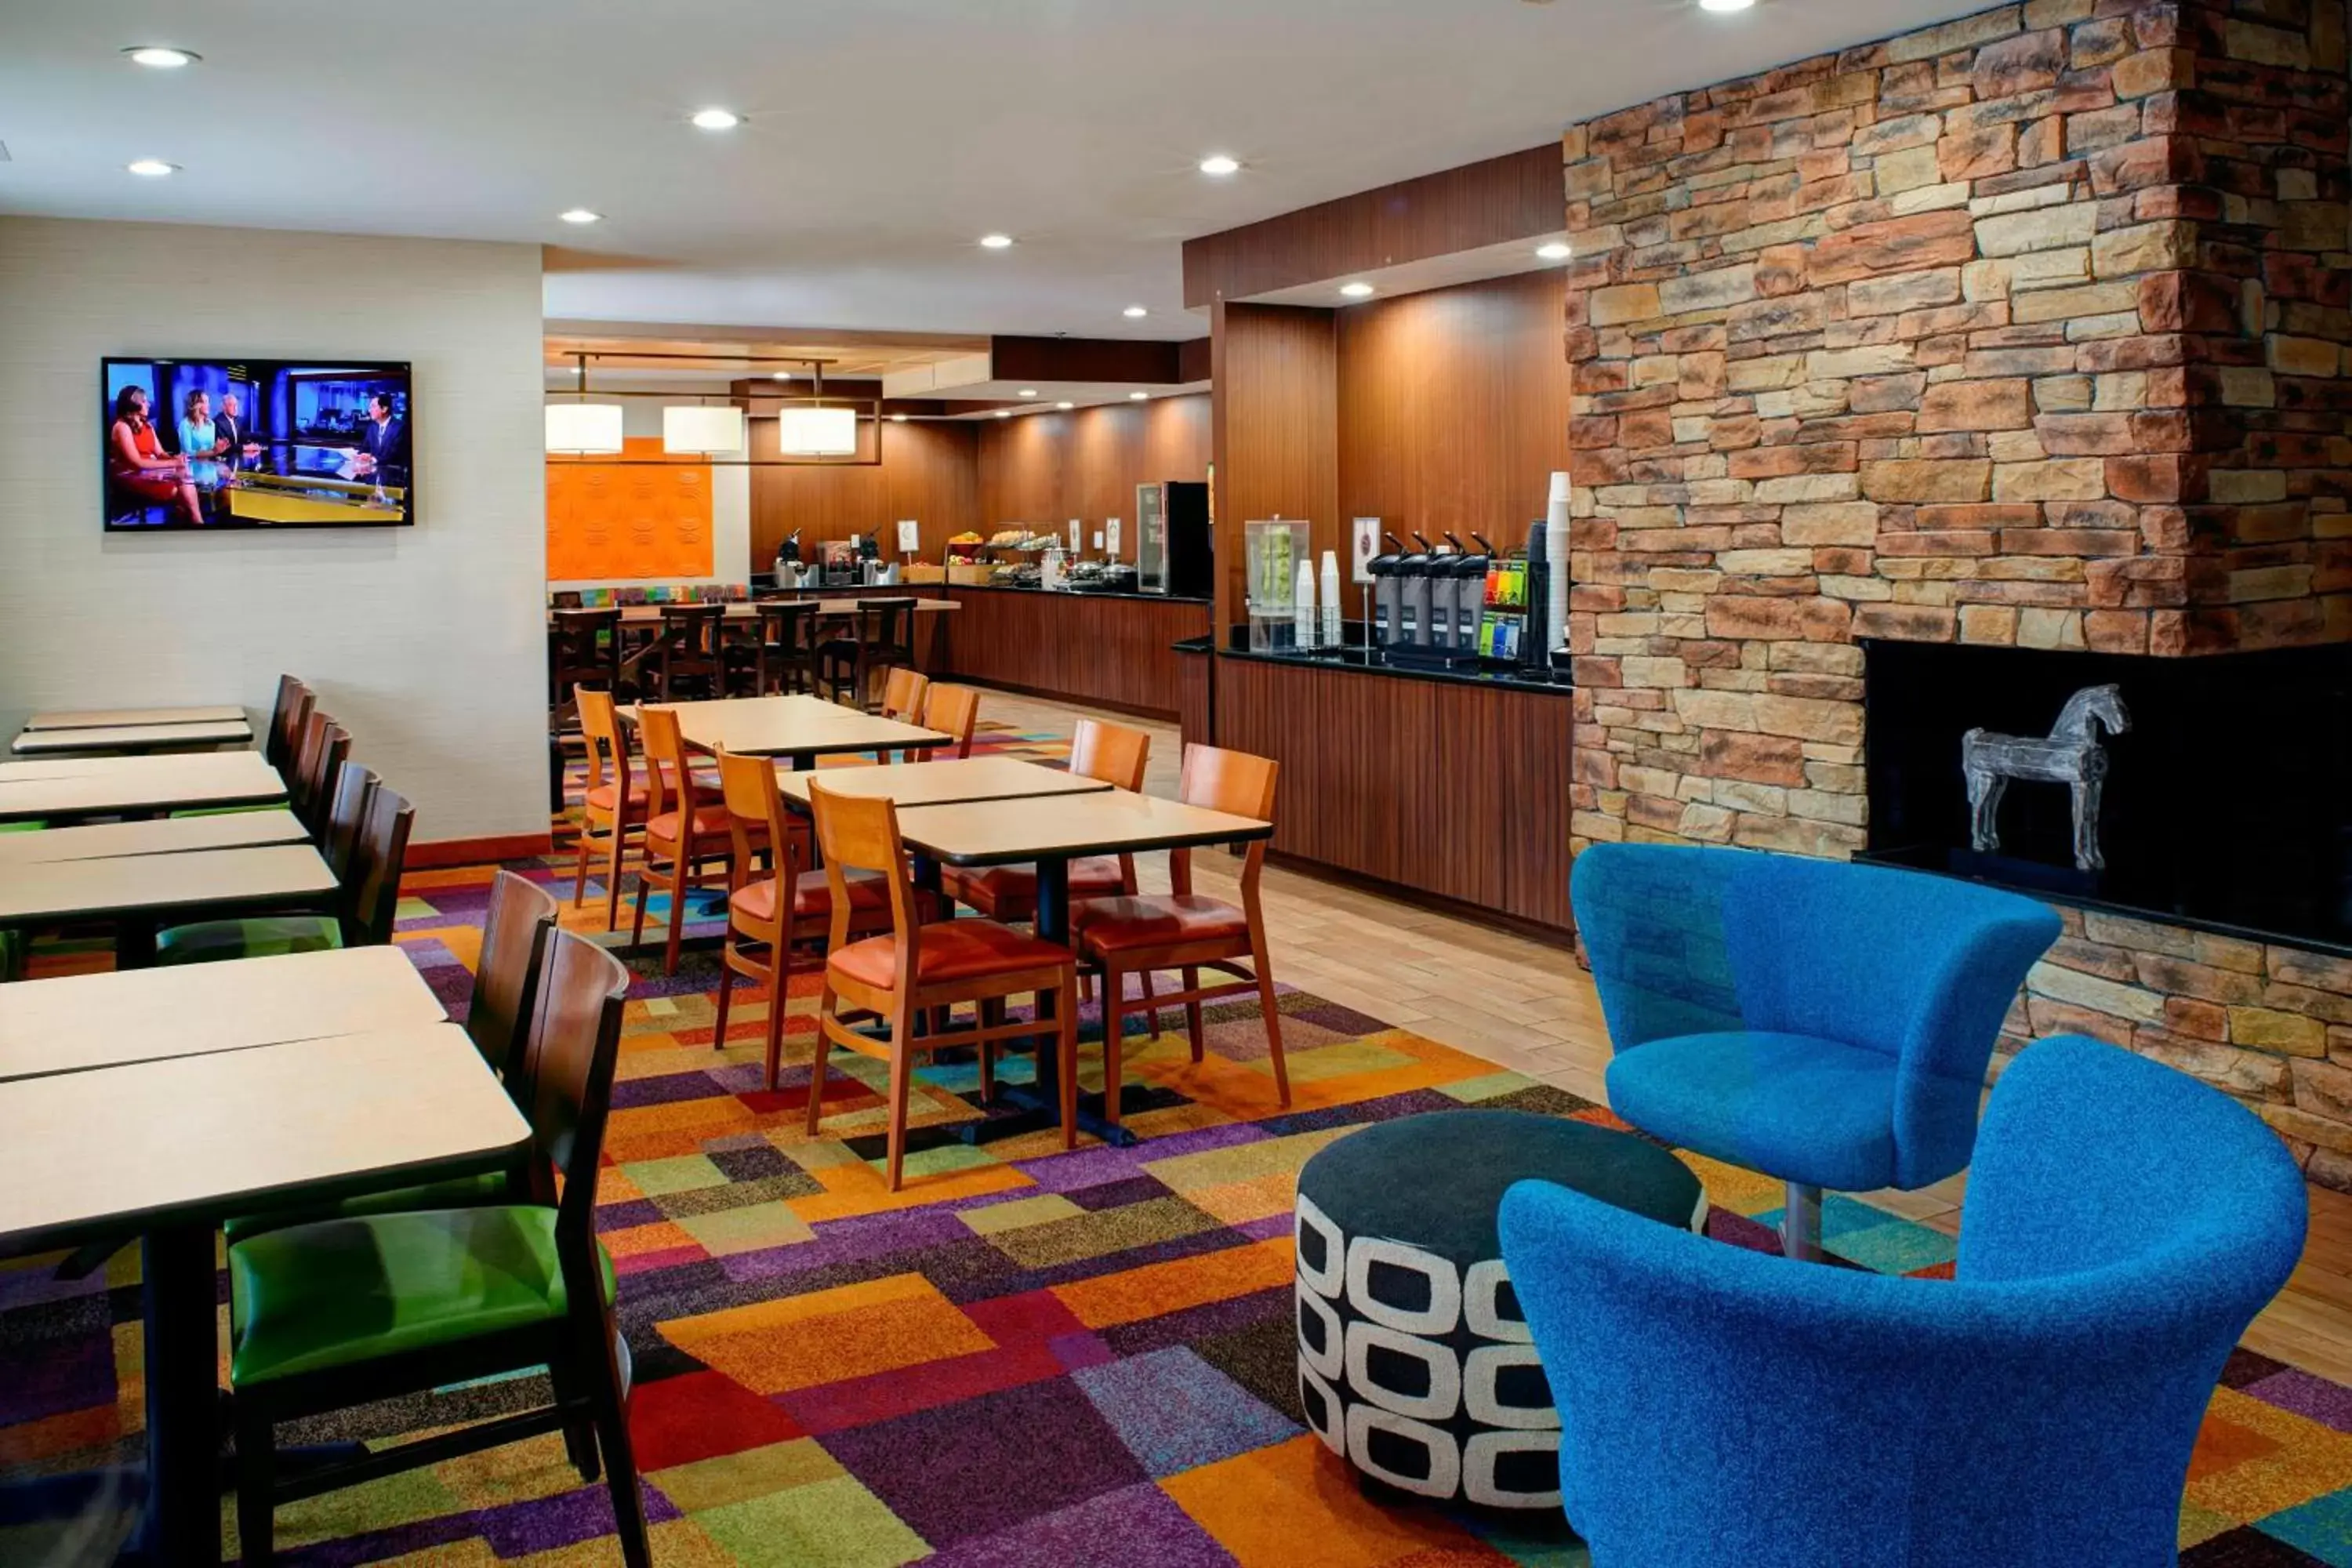 Lobby or reception in Fairfield Inn & Suites Detroit Farmington Hills